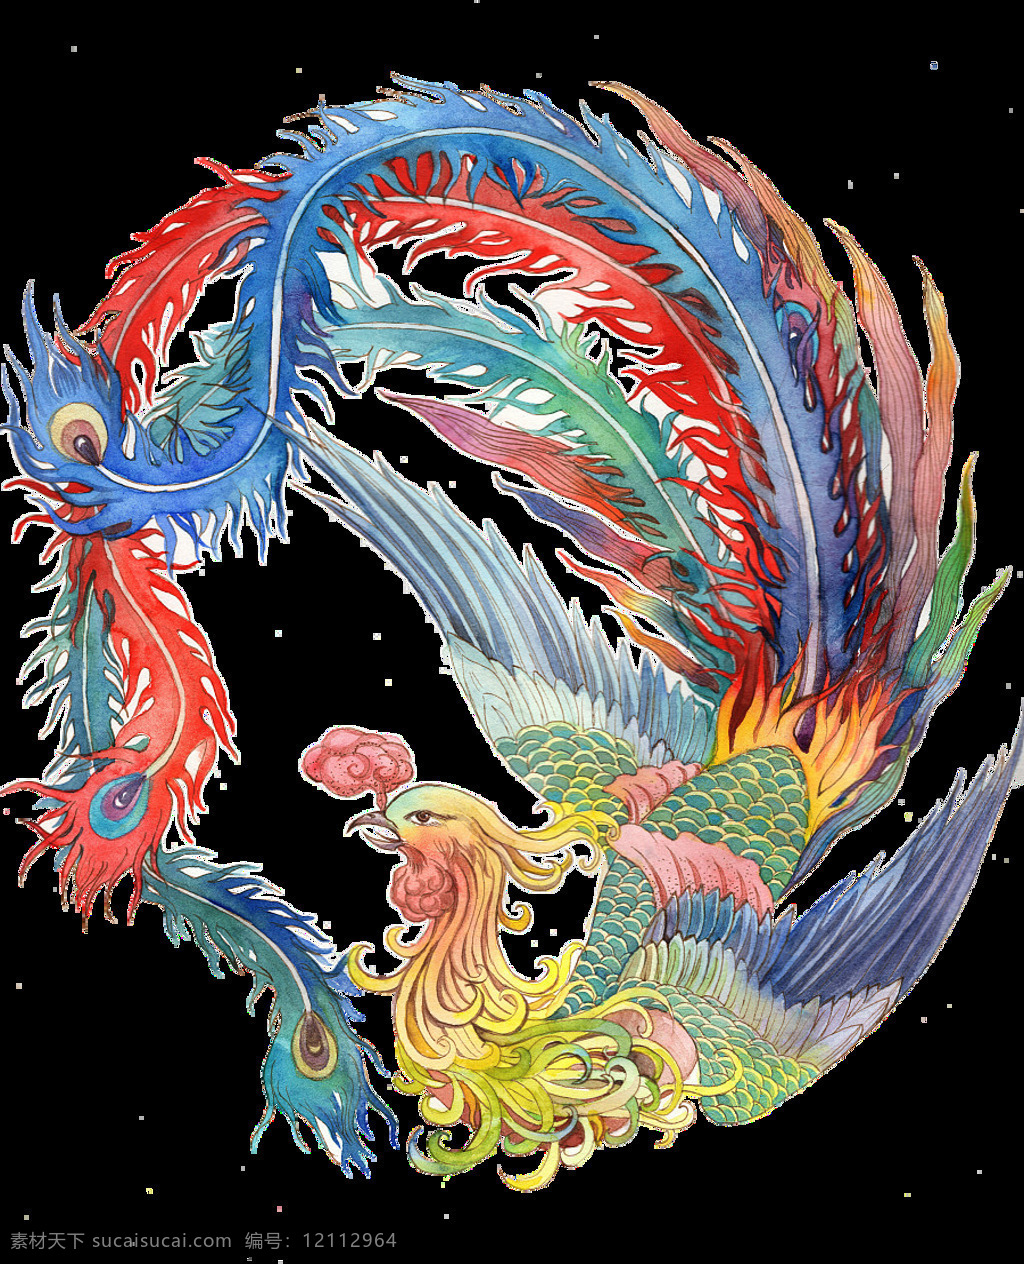 中式 大气 凤凰 图案 中国风 传统 火焰 燃烧 精美 剪纸 绘画 图腾 纹身图案